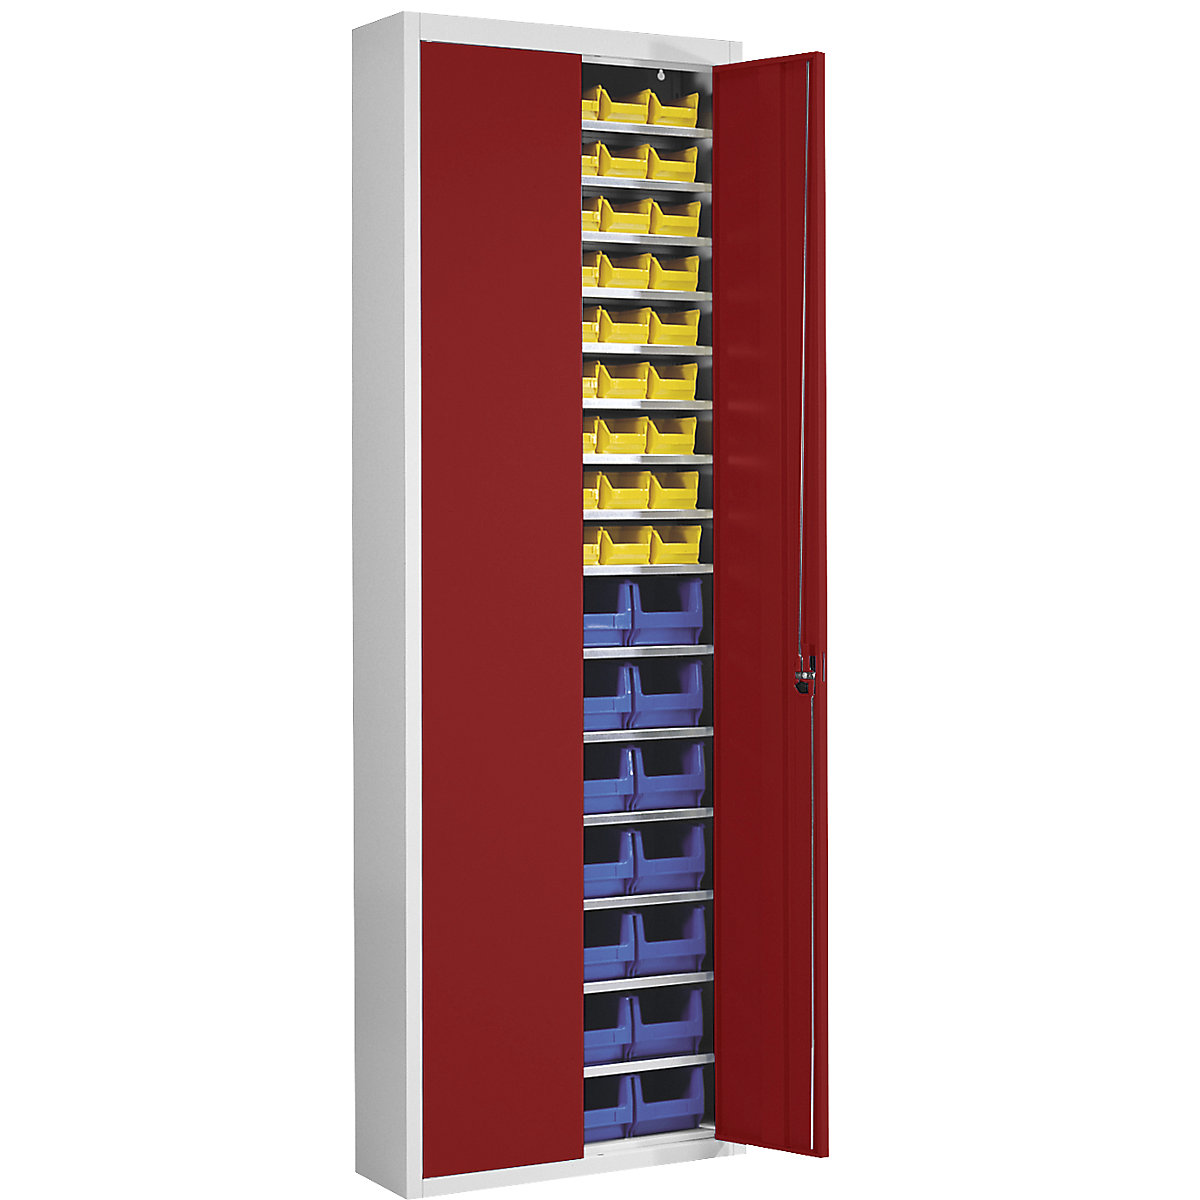 Skladišni ormar s otvorenim skladišnim kutijama – mauser, VxŠxD 2150 x 680 x 280 mm, u dvije boje, korpus u sivoj boji, vrata u crnoj boji, 82 kutije-12